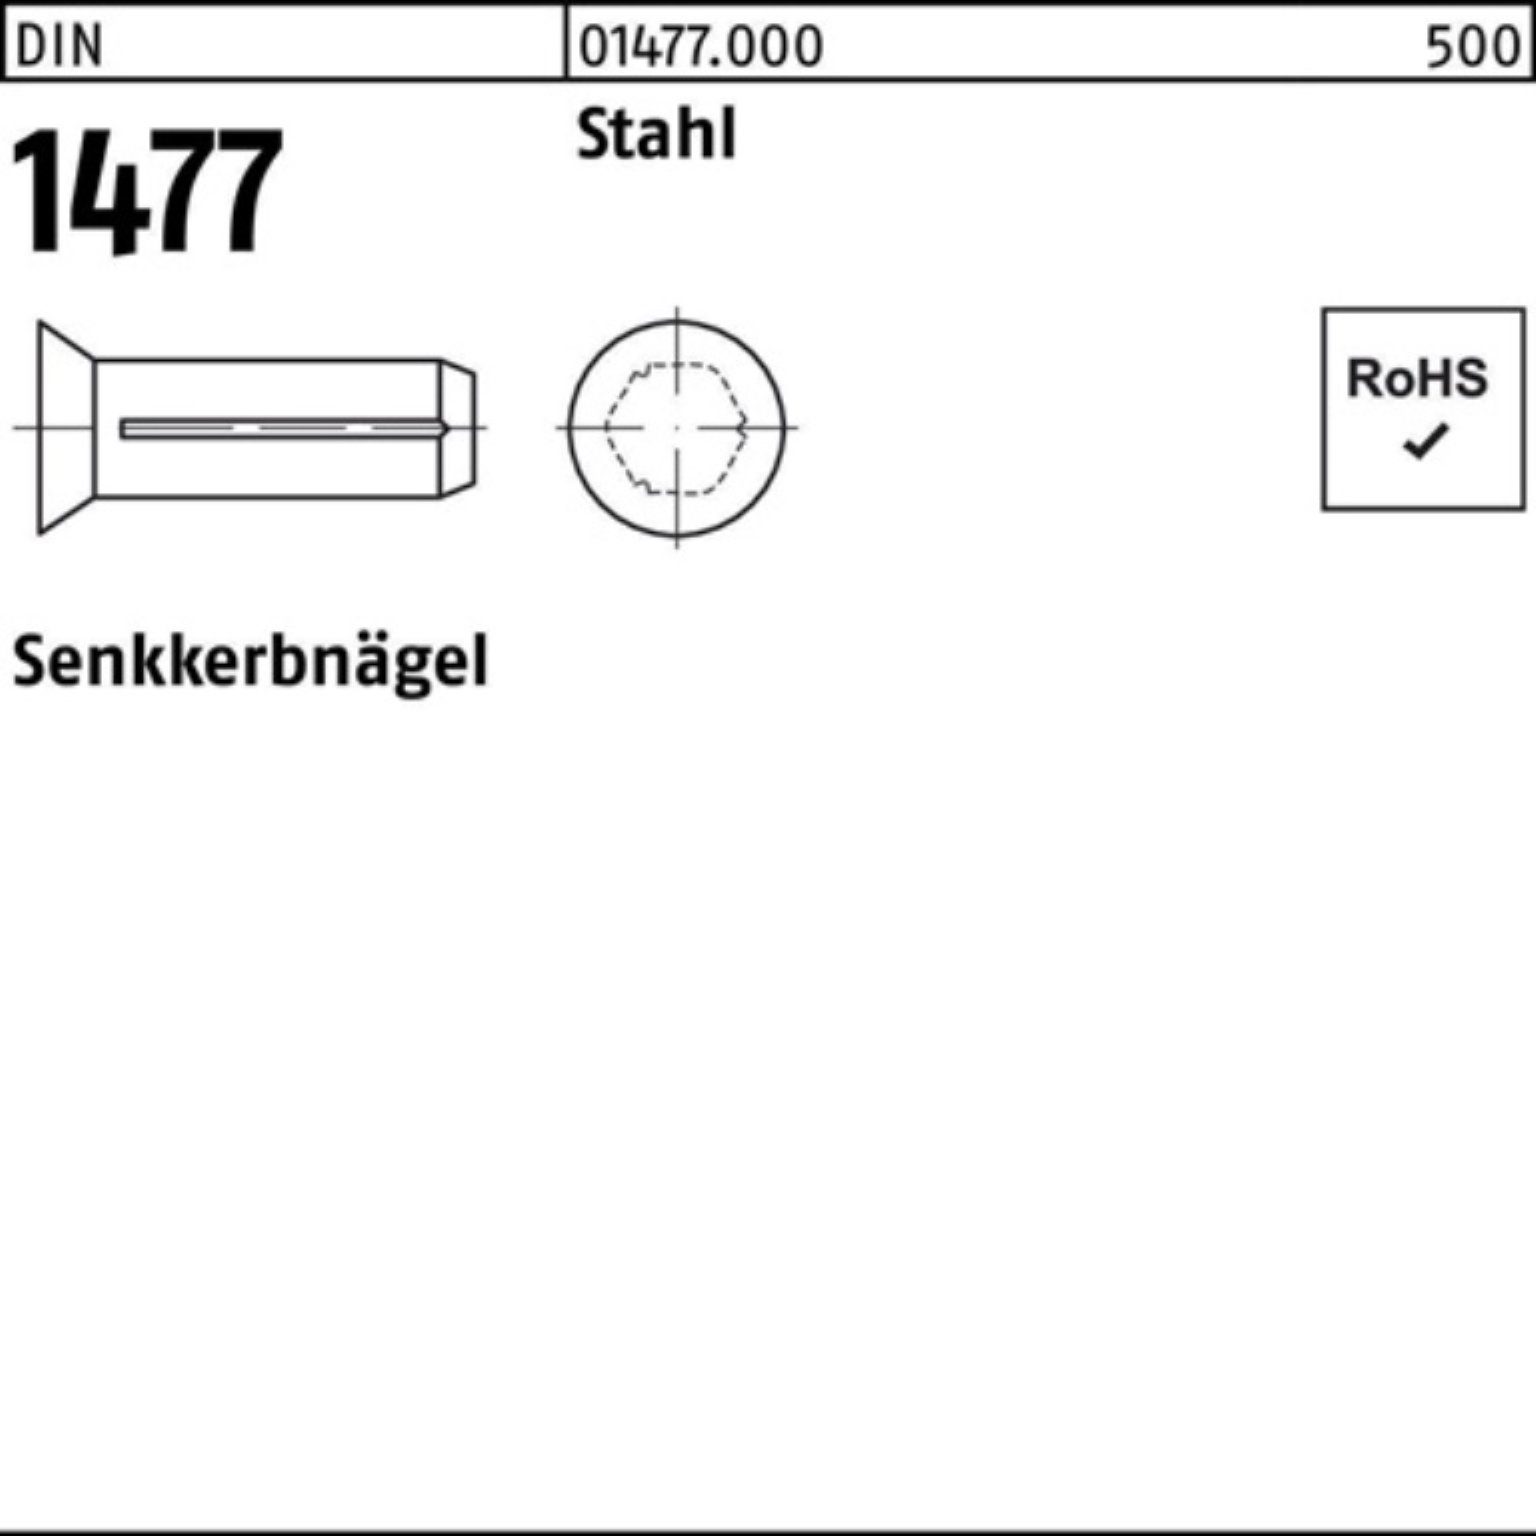 Stahl Stück Stah Senkkerbnagel Pack DIN 250 20 1477 Reyher Nagel 250er 1477 6x DIN